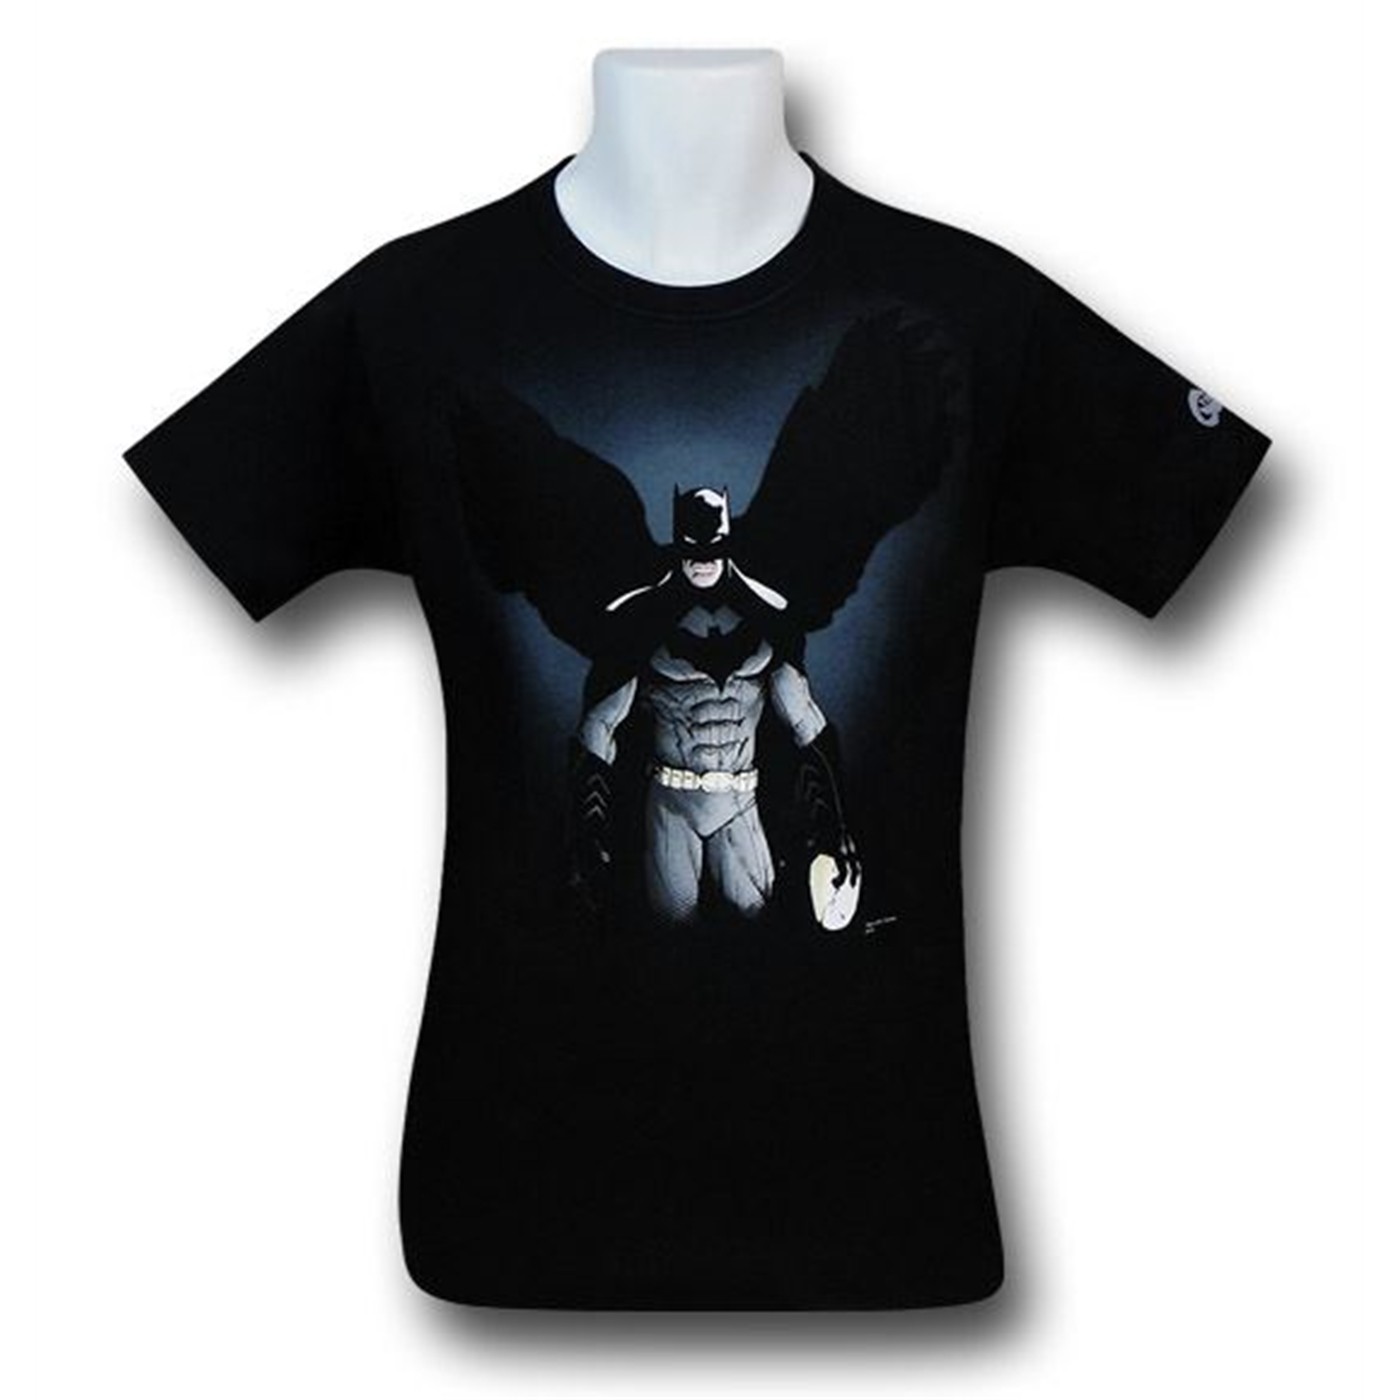 Batman City of Owls T-Shirt